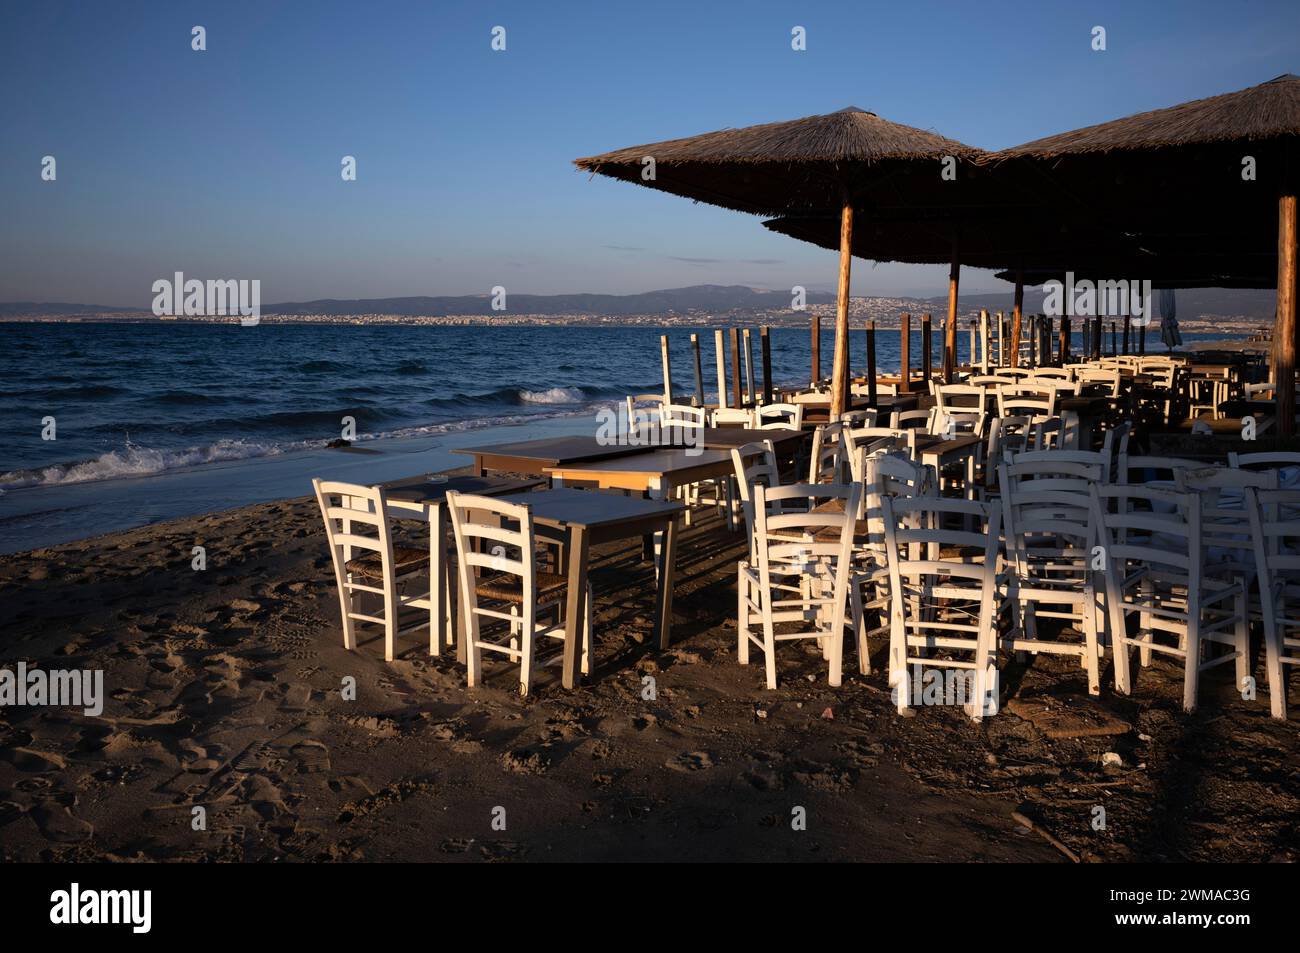 Tavoli, sedie, impilati, ombrelloni, bar sulla spiaggia, vuoto, spiaggia, mare, Peraia, anche Perea, luce serale, Salonicco, Macedonia, Grecia Foto Stock